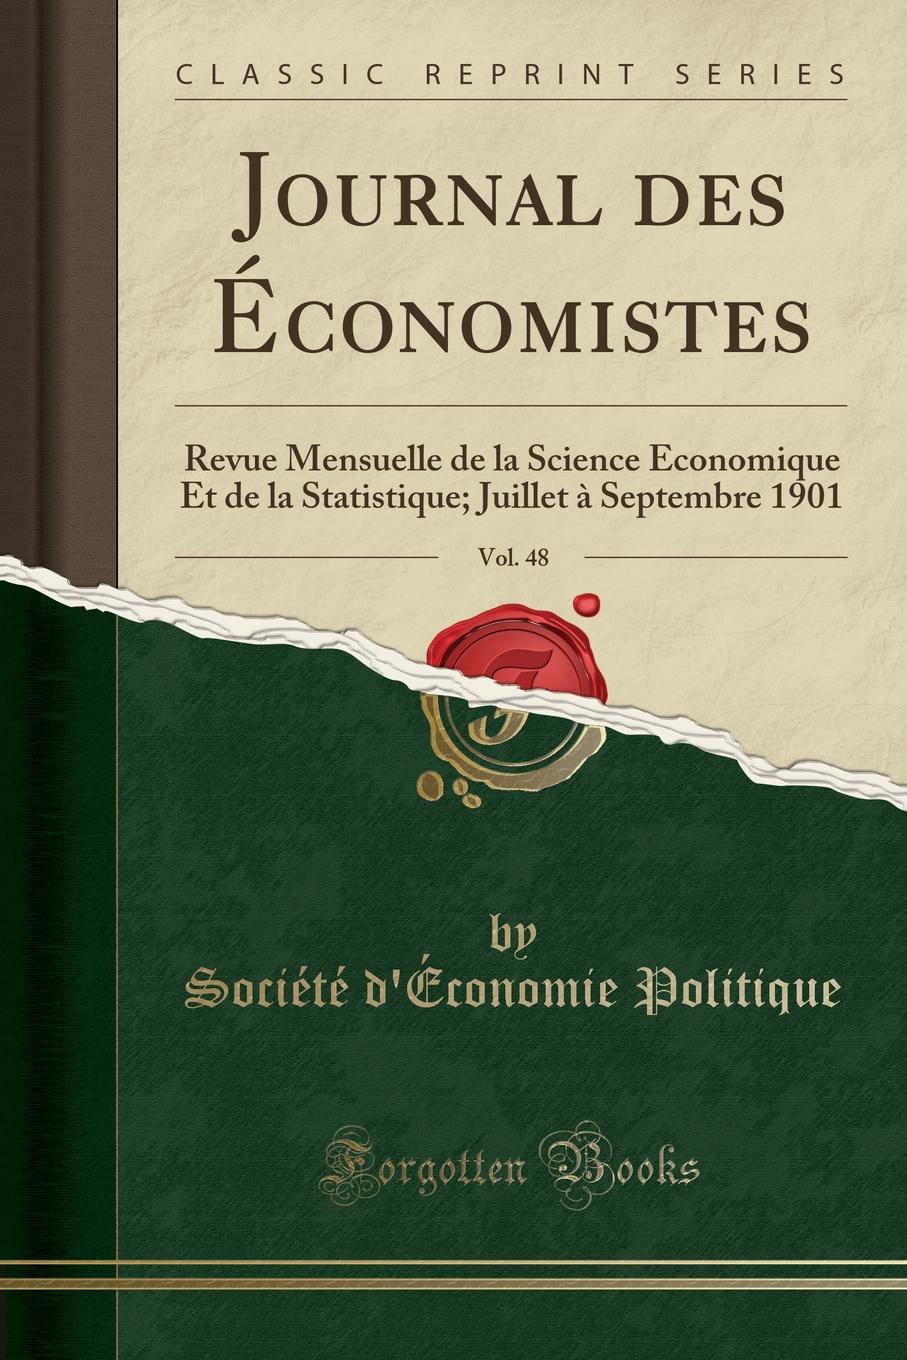 фото Journal des Economistes, Vol. 48. Revue Mensuelle de la Science Economique Et de la Statistique; Juillet a Septembre 1901 (Classic Reprint)